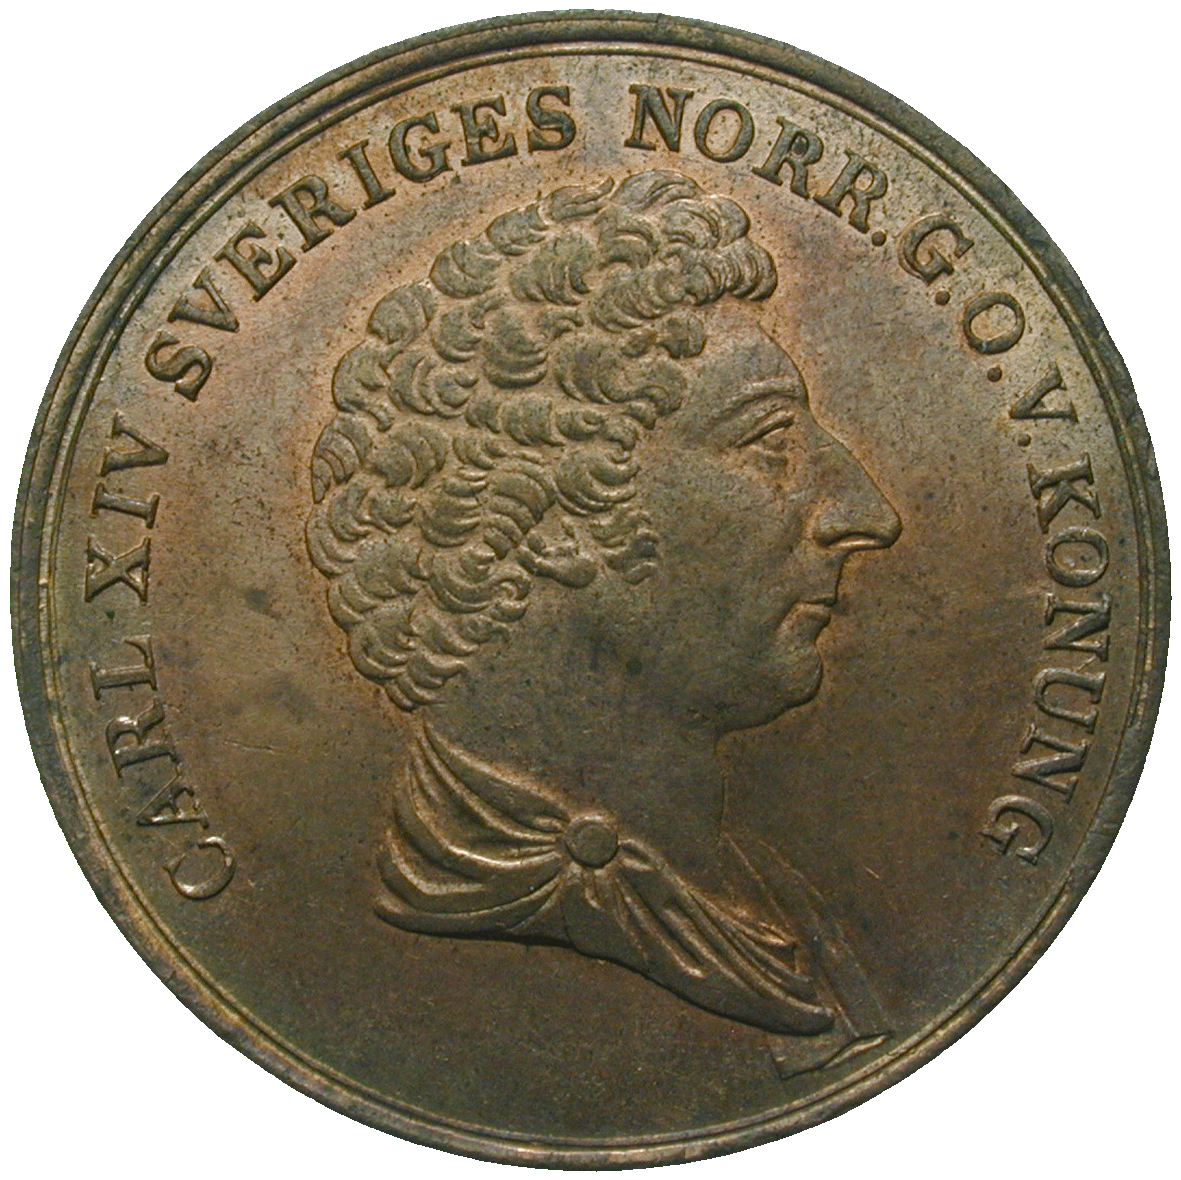 Kingdom of Sweden, Charles XIV John, 2 Skilling Banco 1837 (obverse)